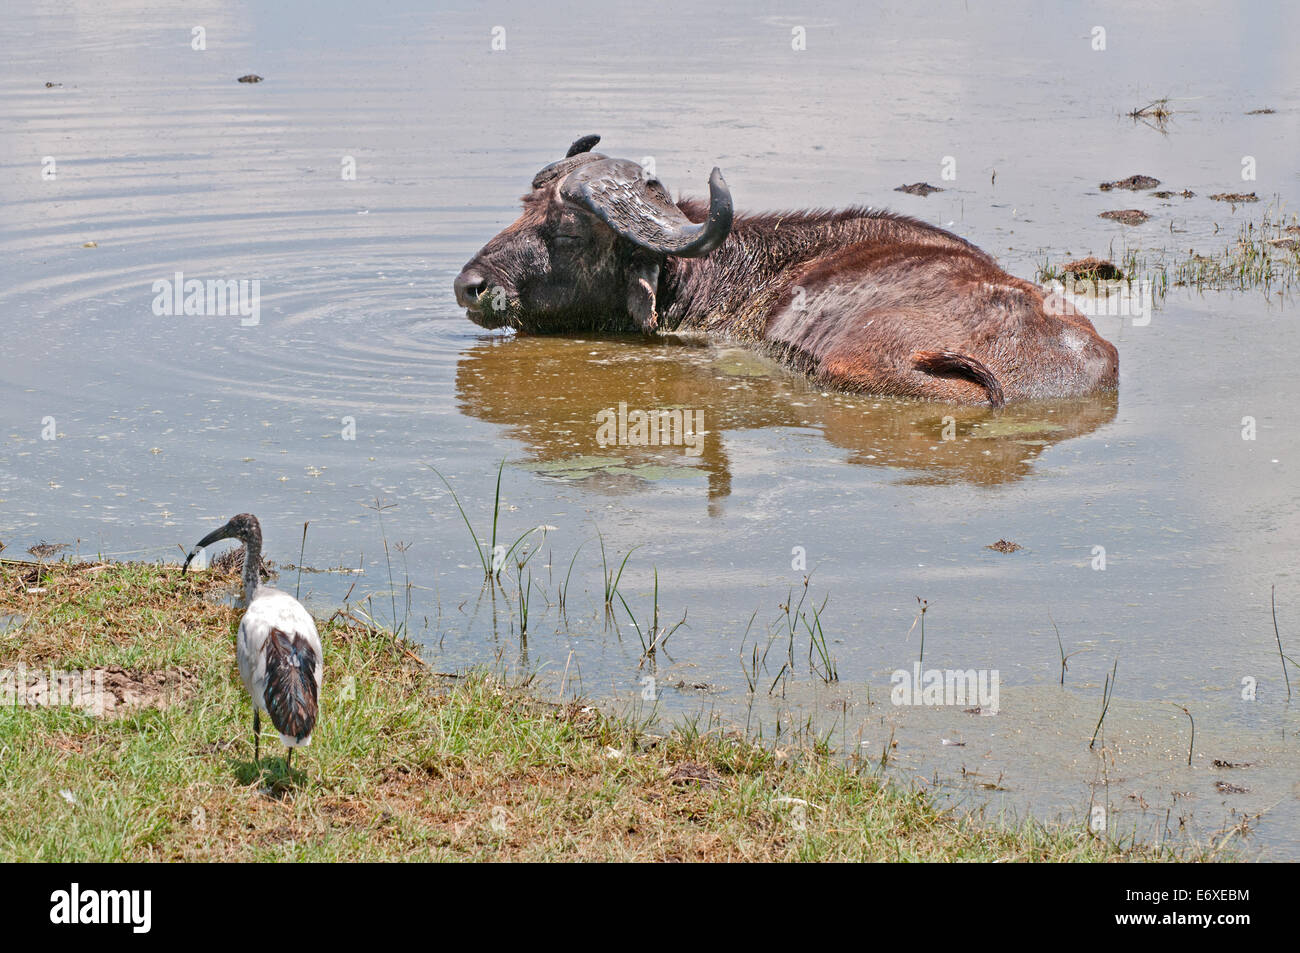 SYNCHERUS africaine Bufallo CAFFER se vautrer dans l'eau peu profonde au bord du Parc National du Lac Nakuru au Kenya Afrique Afrique de l'Est B Banque D'Images